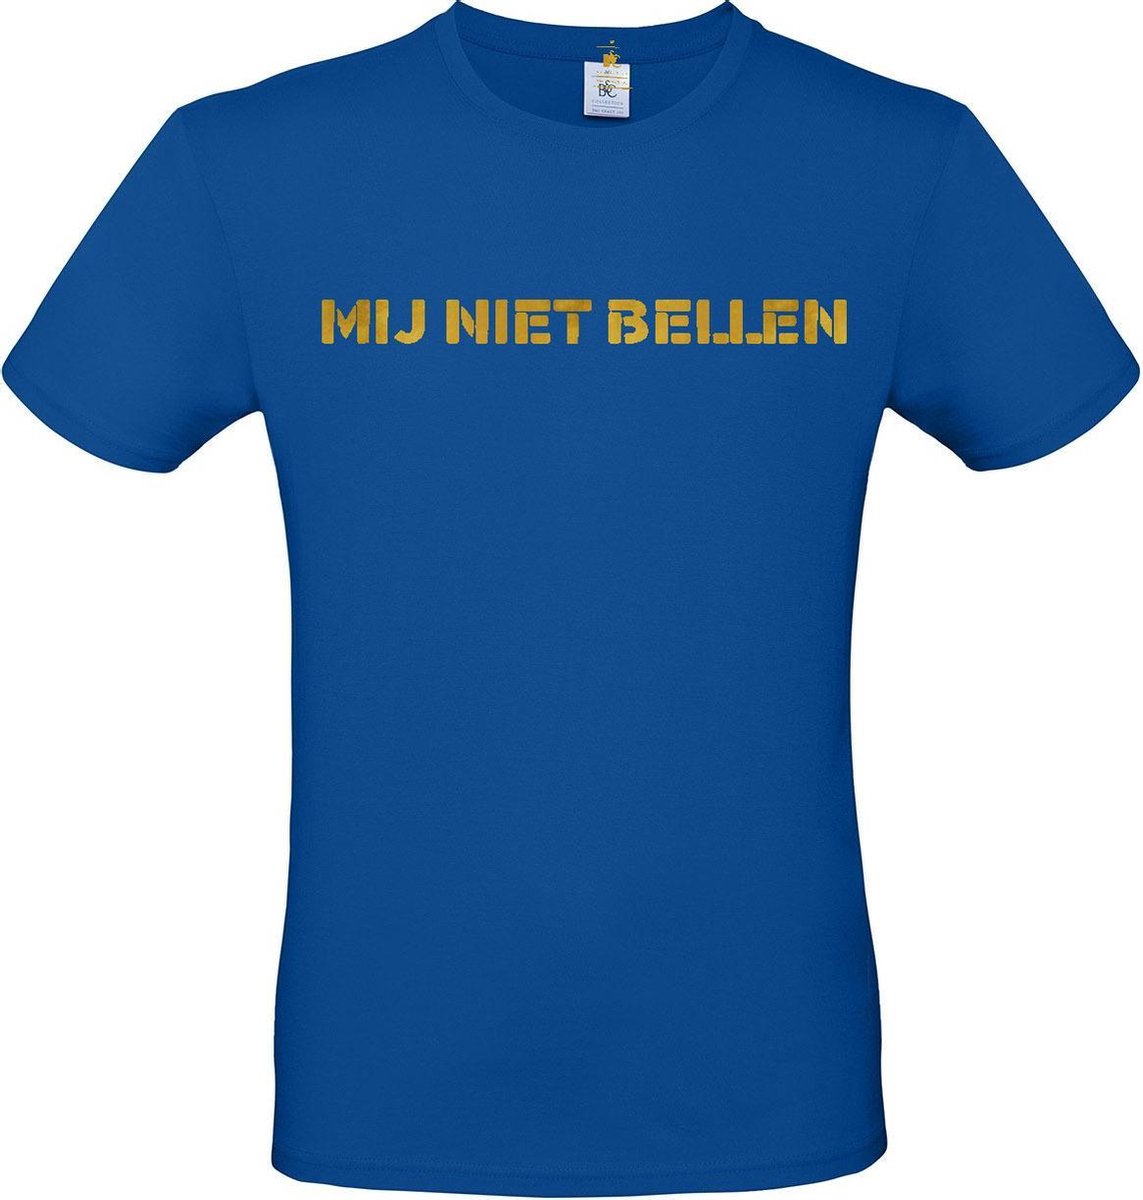 T-shirt met opdruk “Mij niet bellen”, Blauw T-shirt met goudkleurige opdruk. | Chateau Meiland | Martien Meiland | BC custom